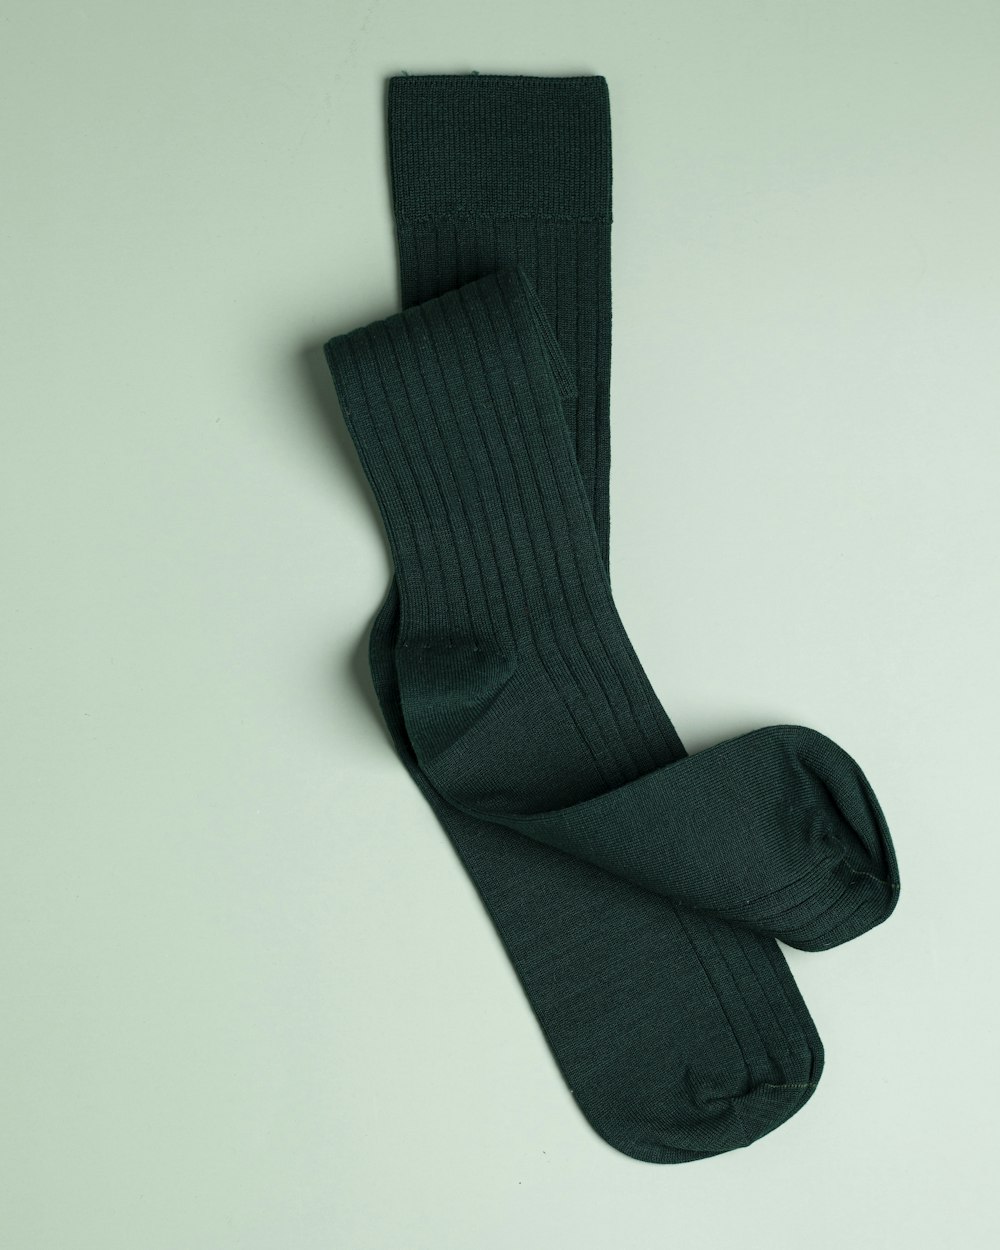 Un par de calcetines verdes sobre una superficie blanca